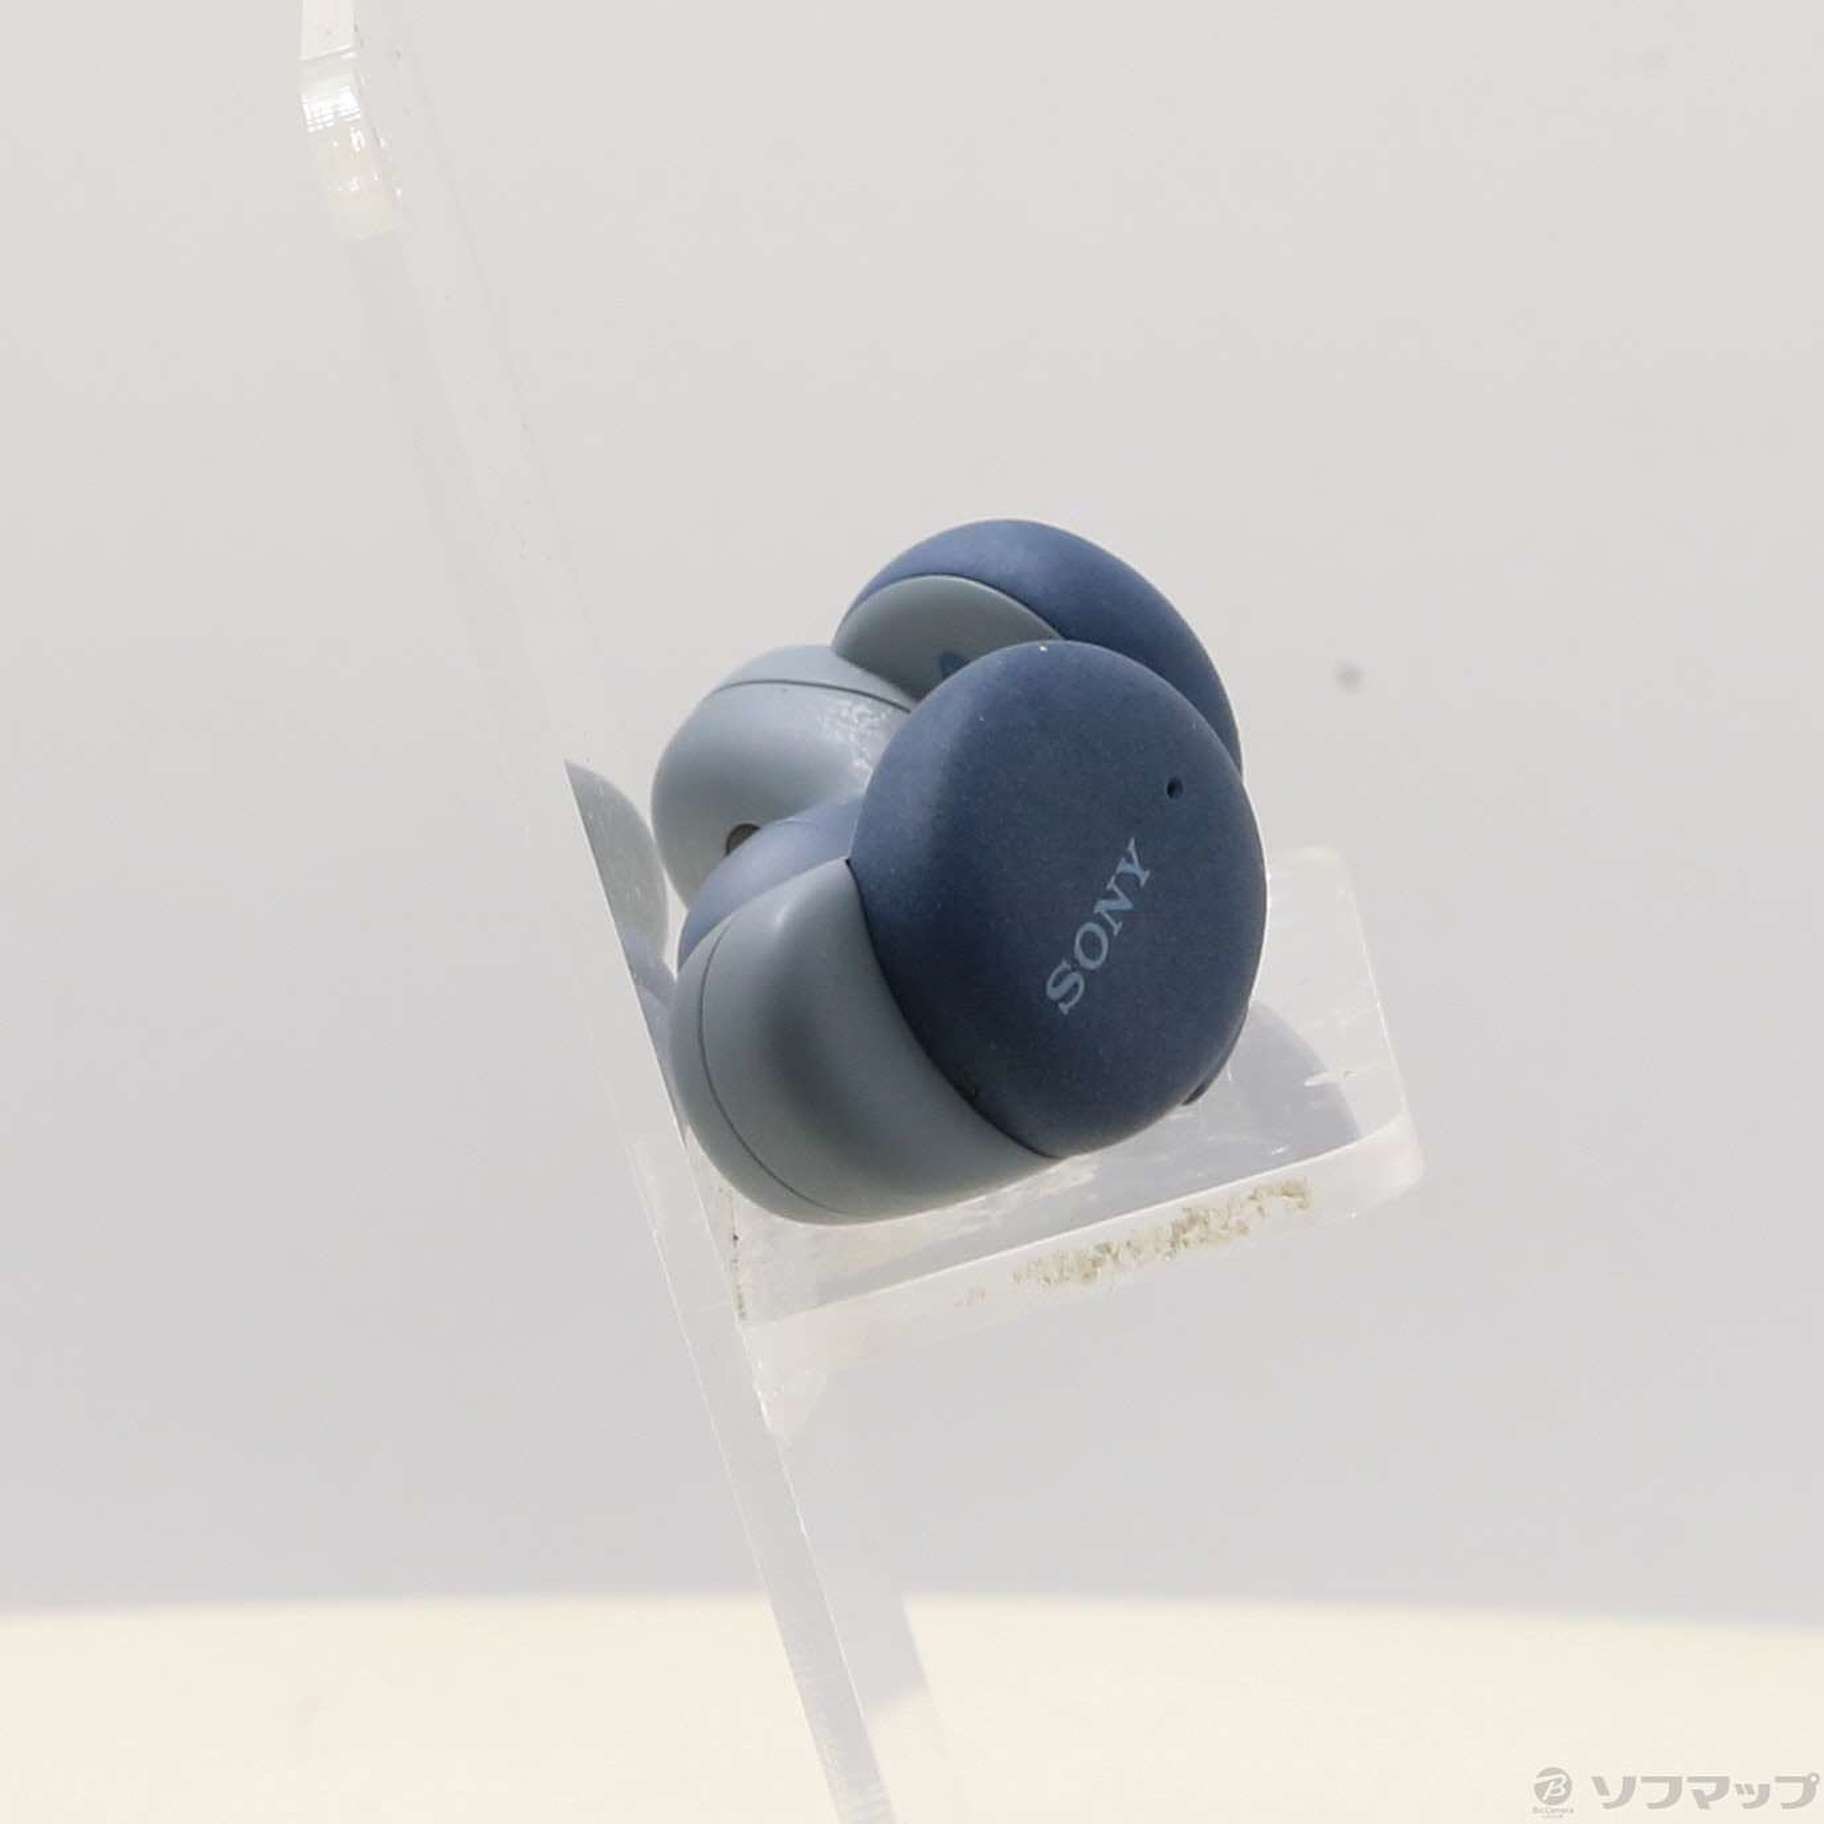 中古】h.ear in 3 Truly Wireless WF-H800 L ブルー